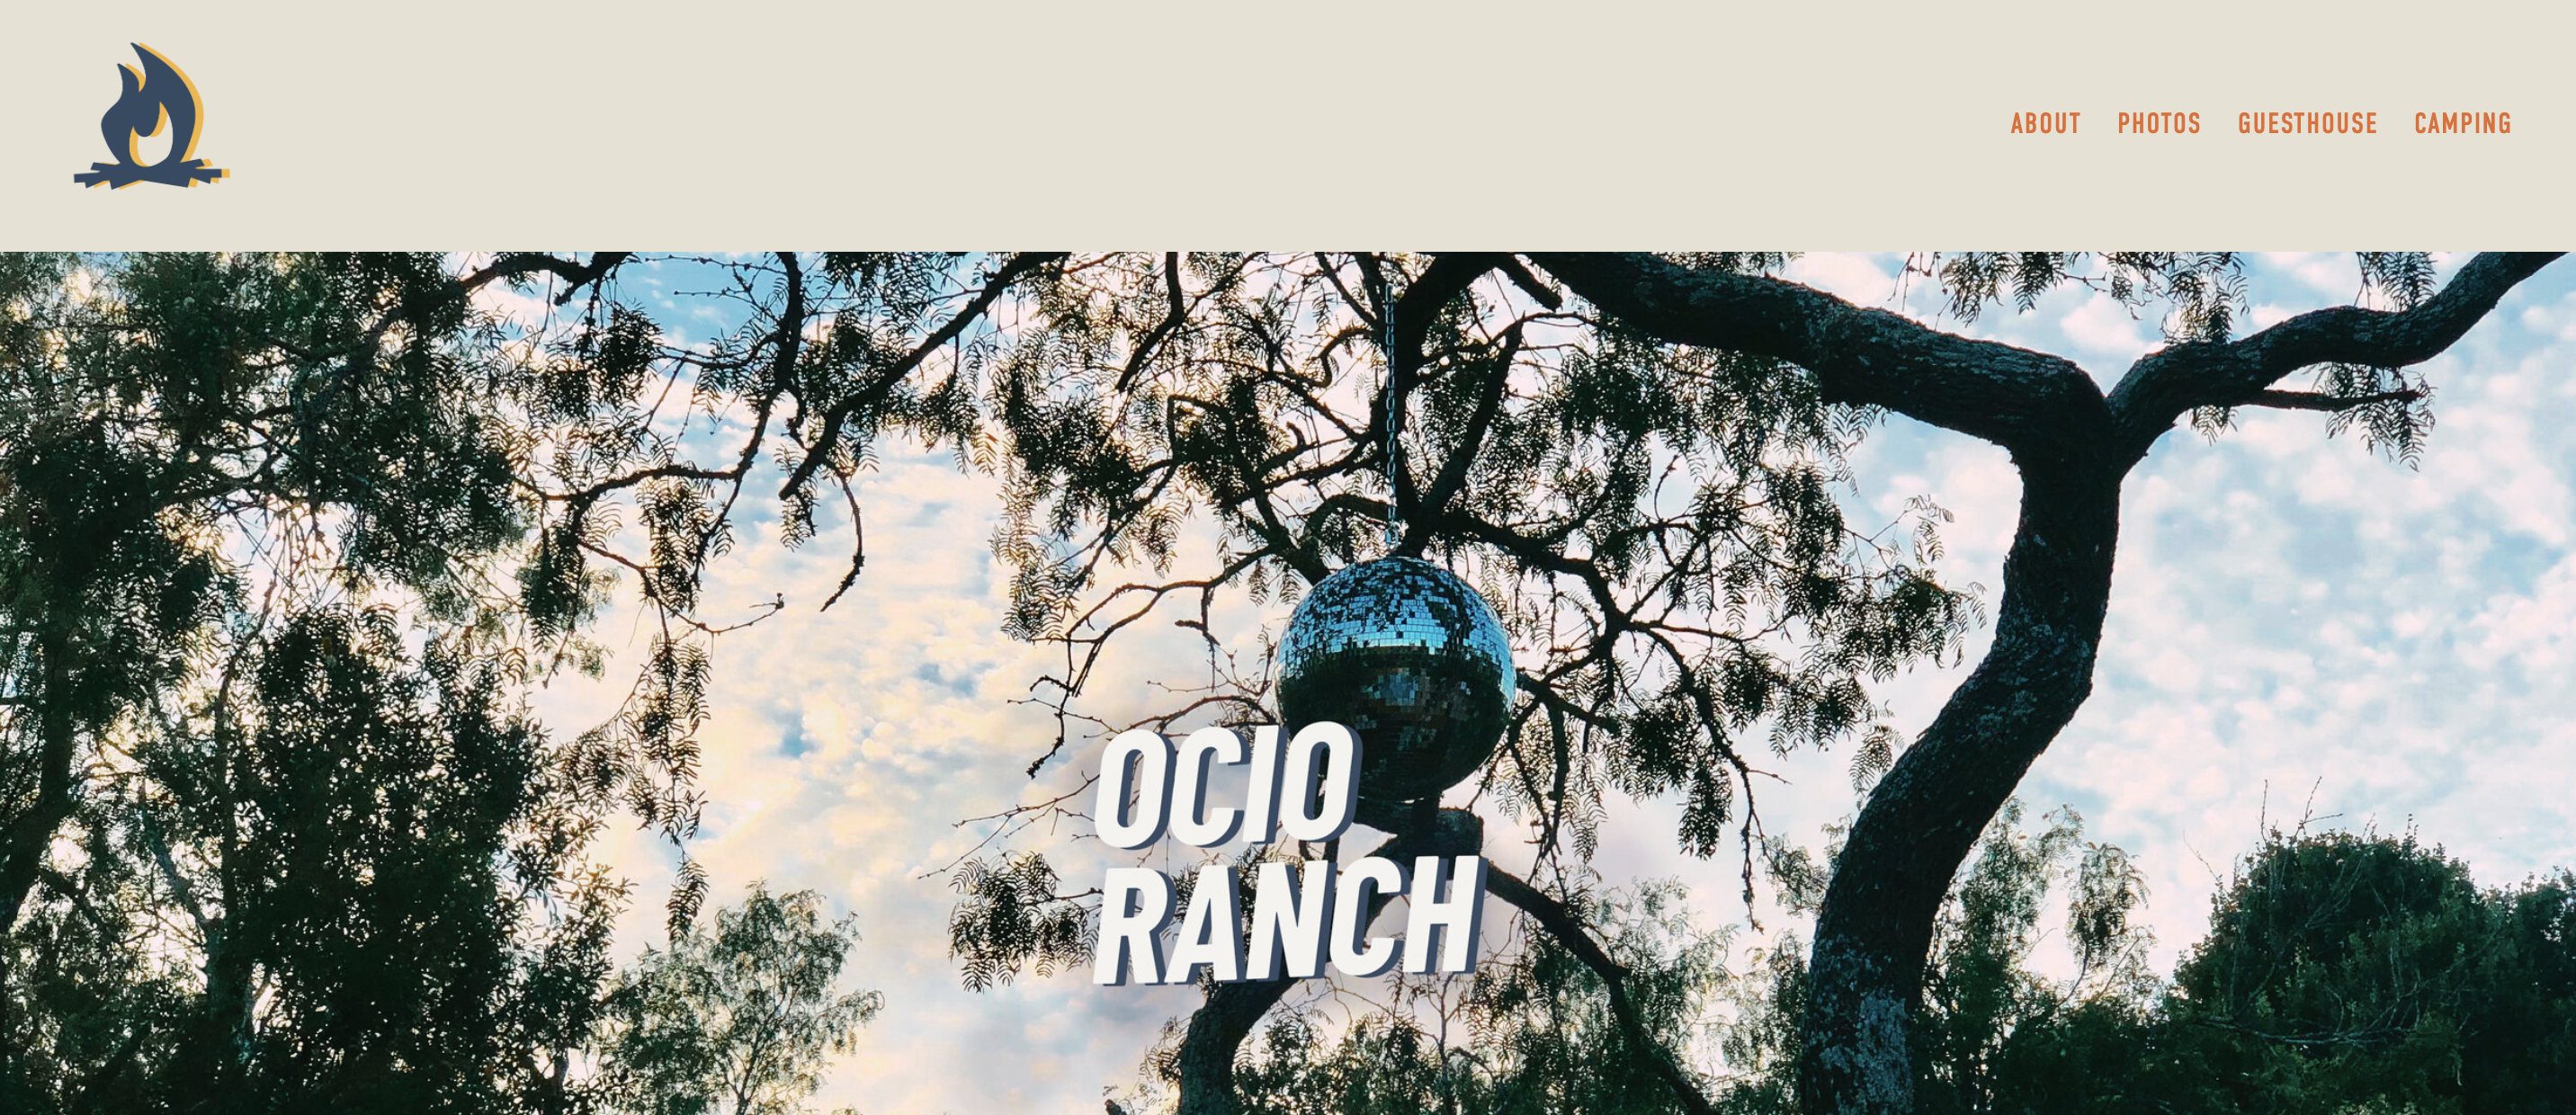 Ocio Ranch Site